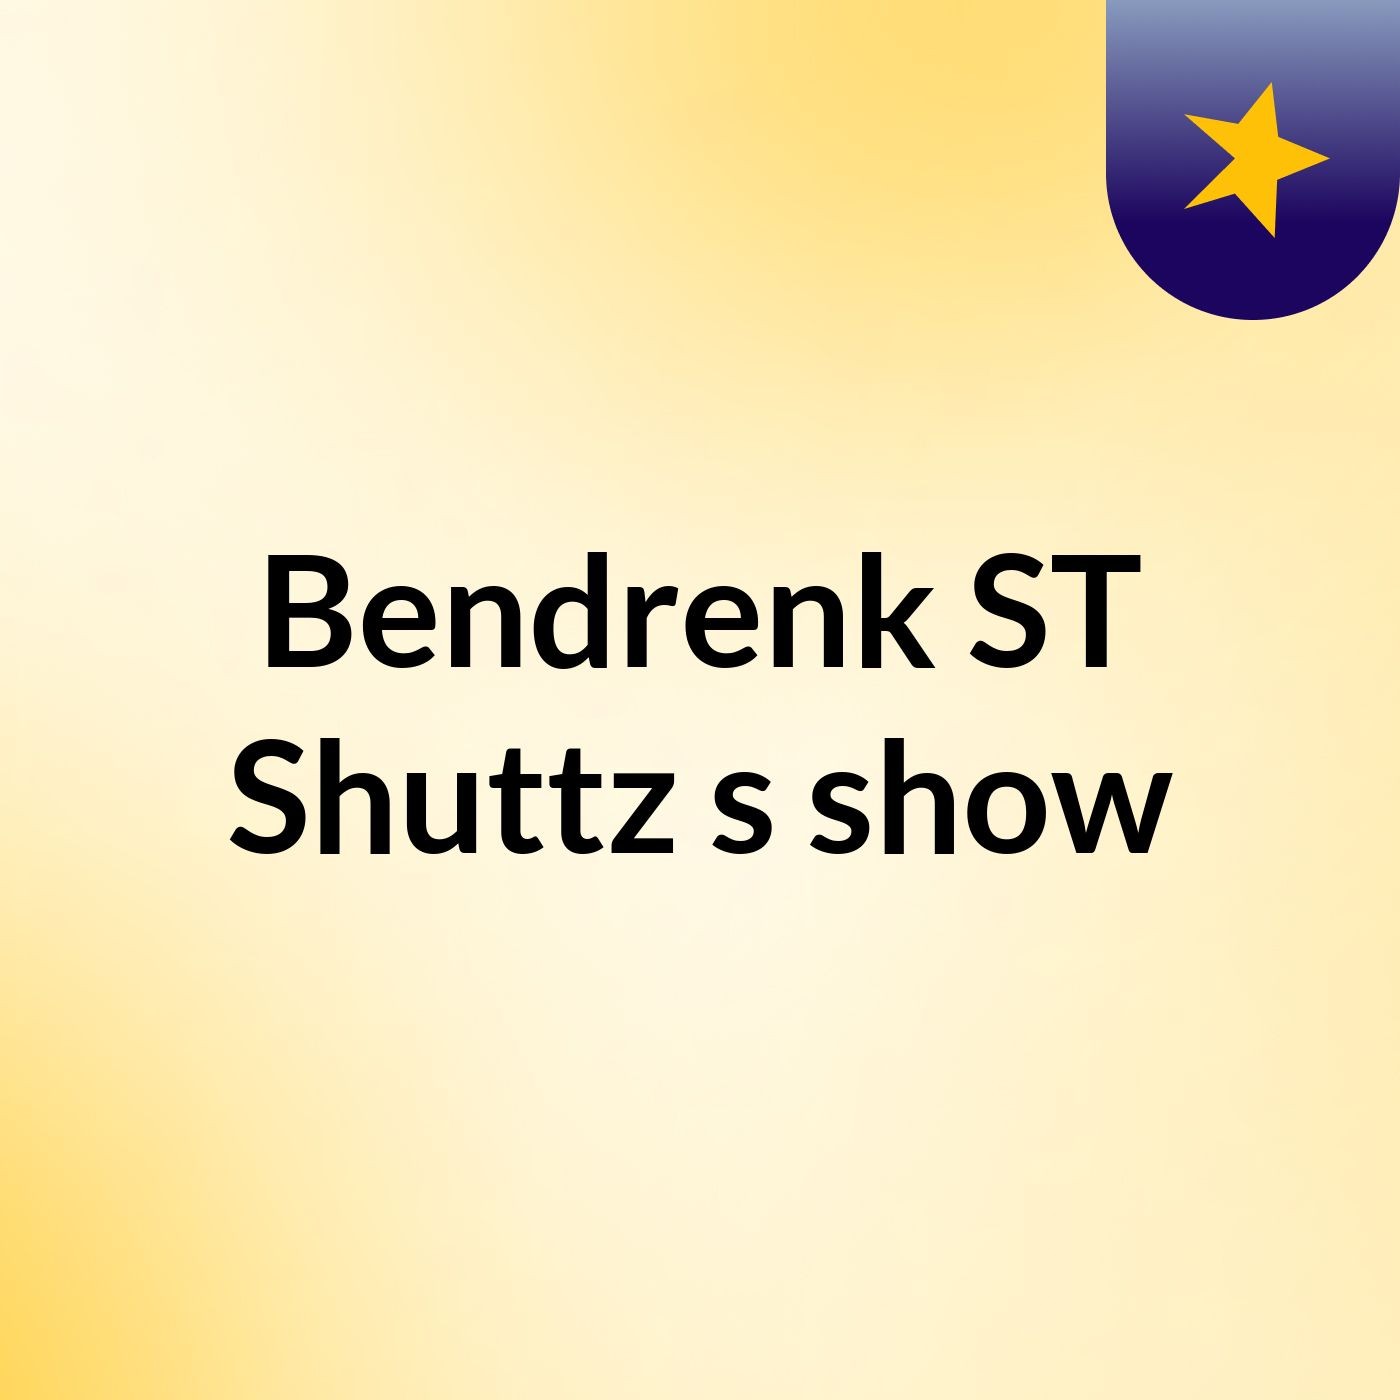 Bendrenk ST Shuttz's show